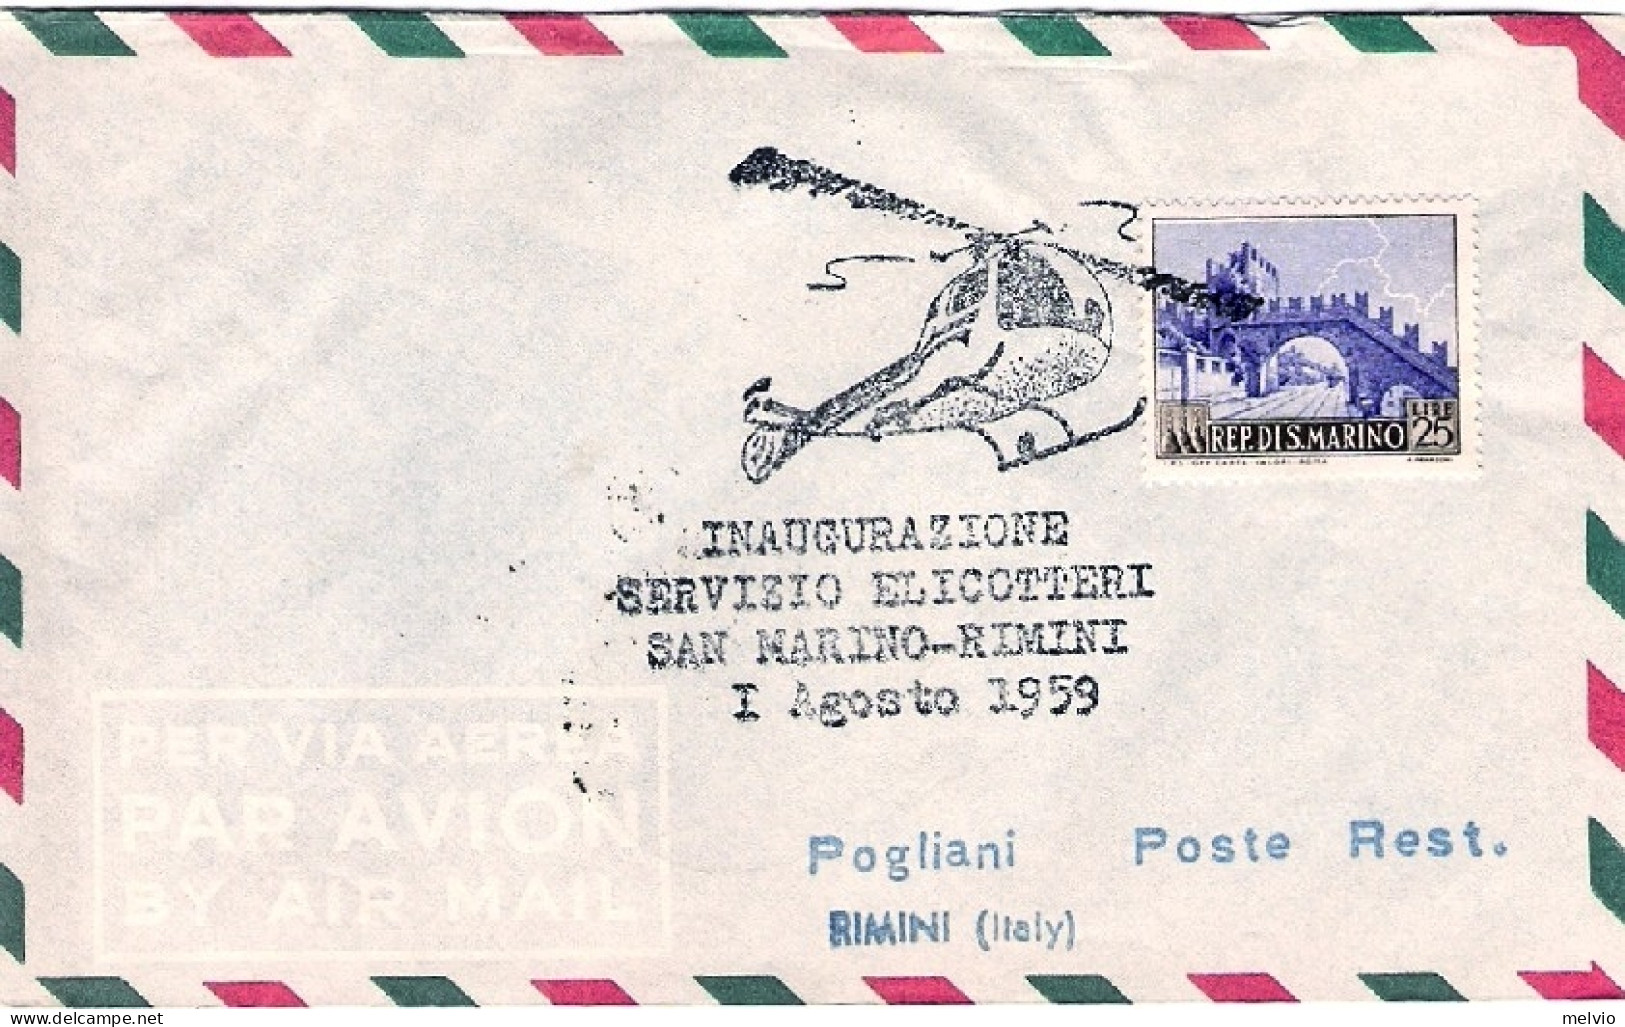 San Marino-1959 Bollo Inaugurazione Servizio Elicotteri San Marino-Rimini 1 Agos - Airmail